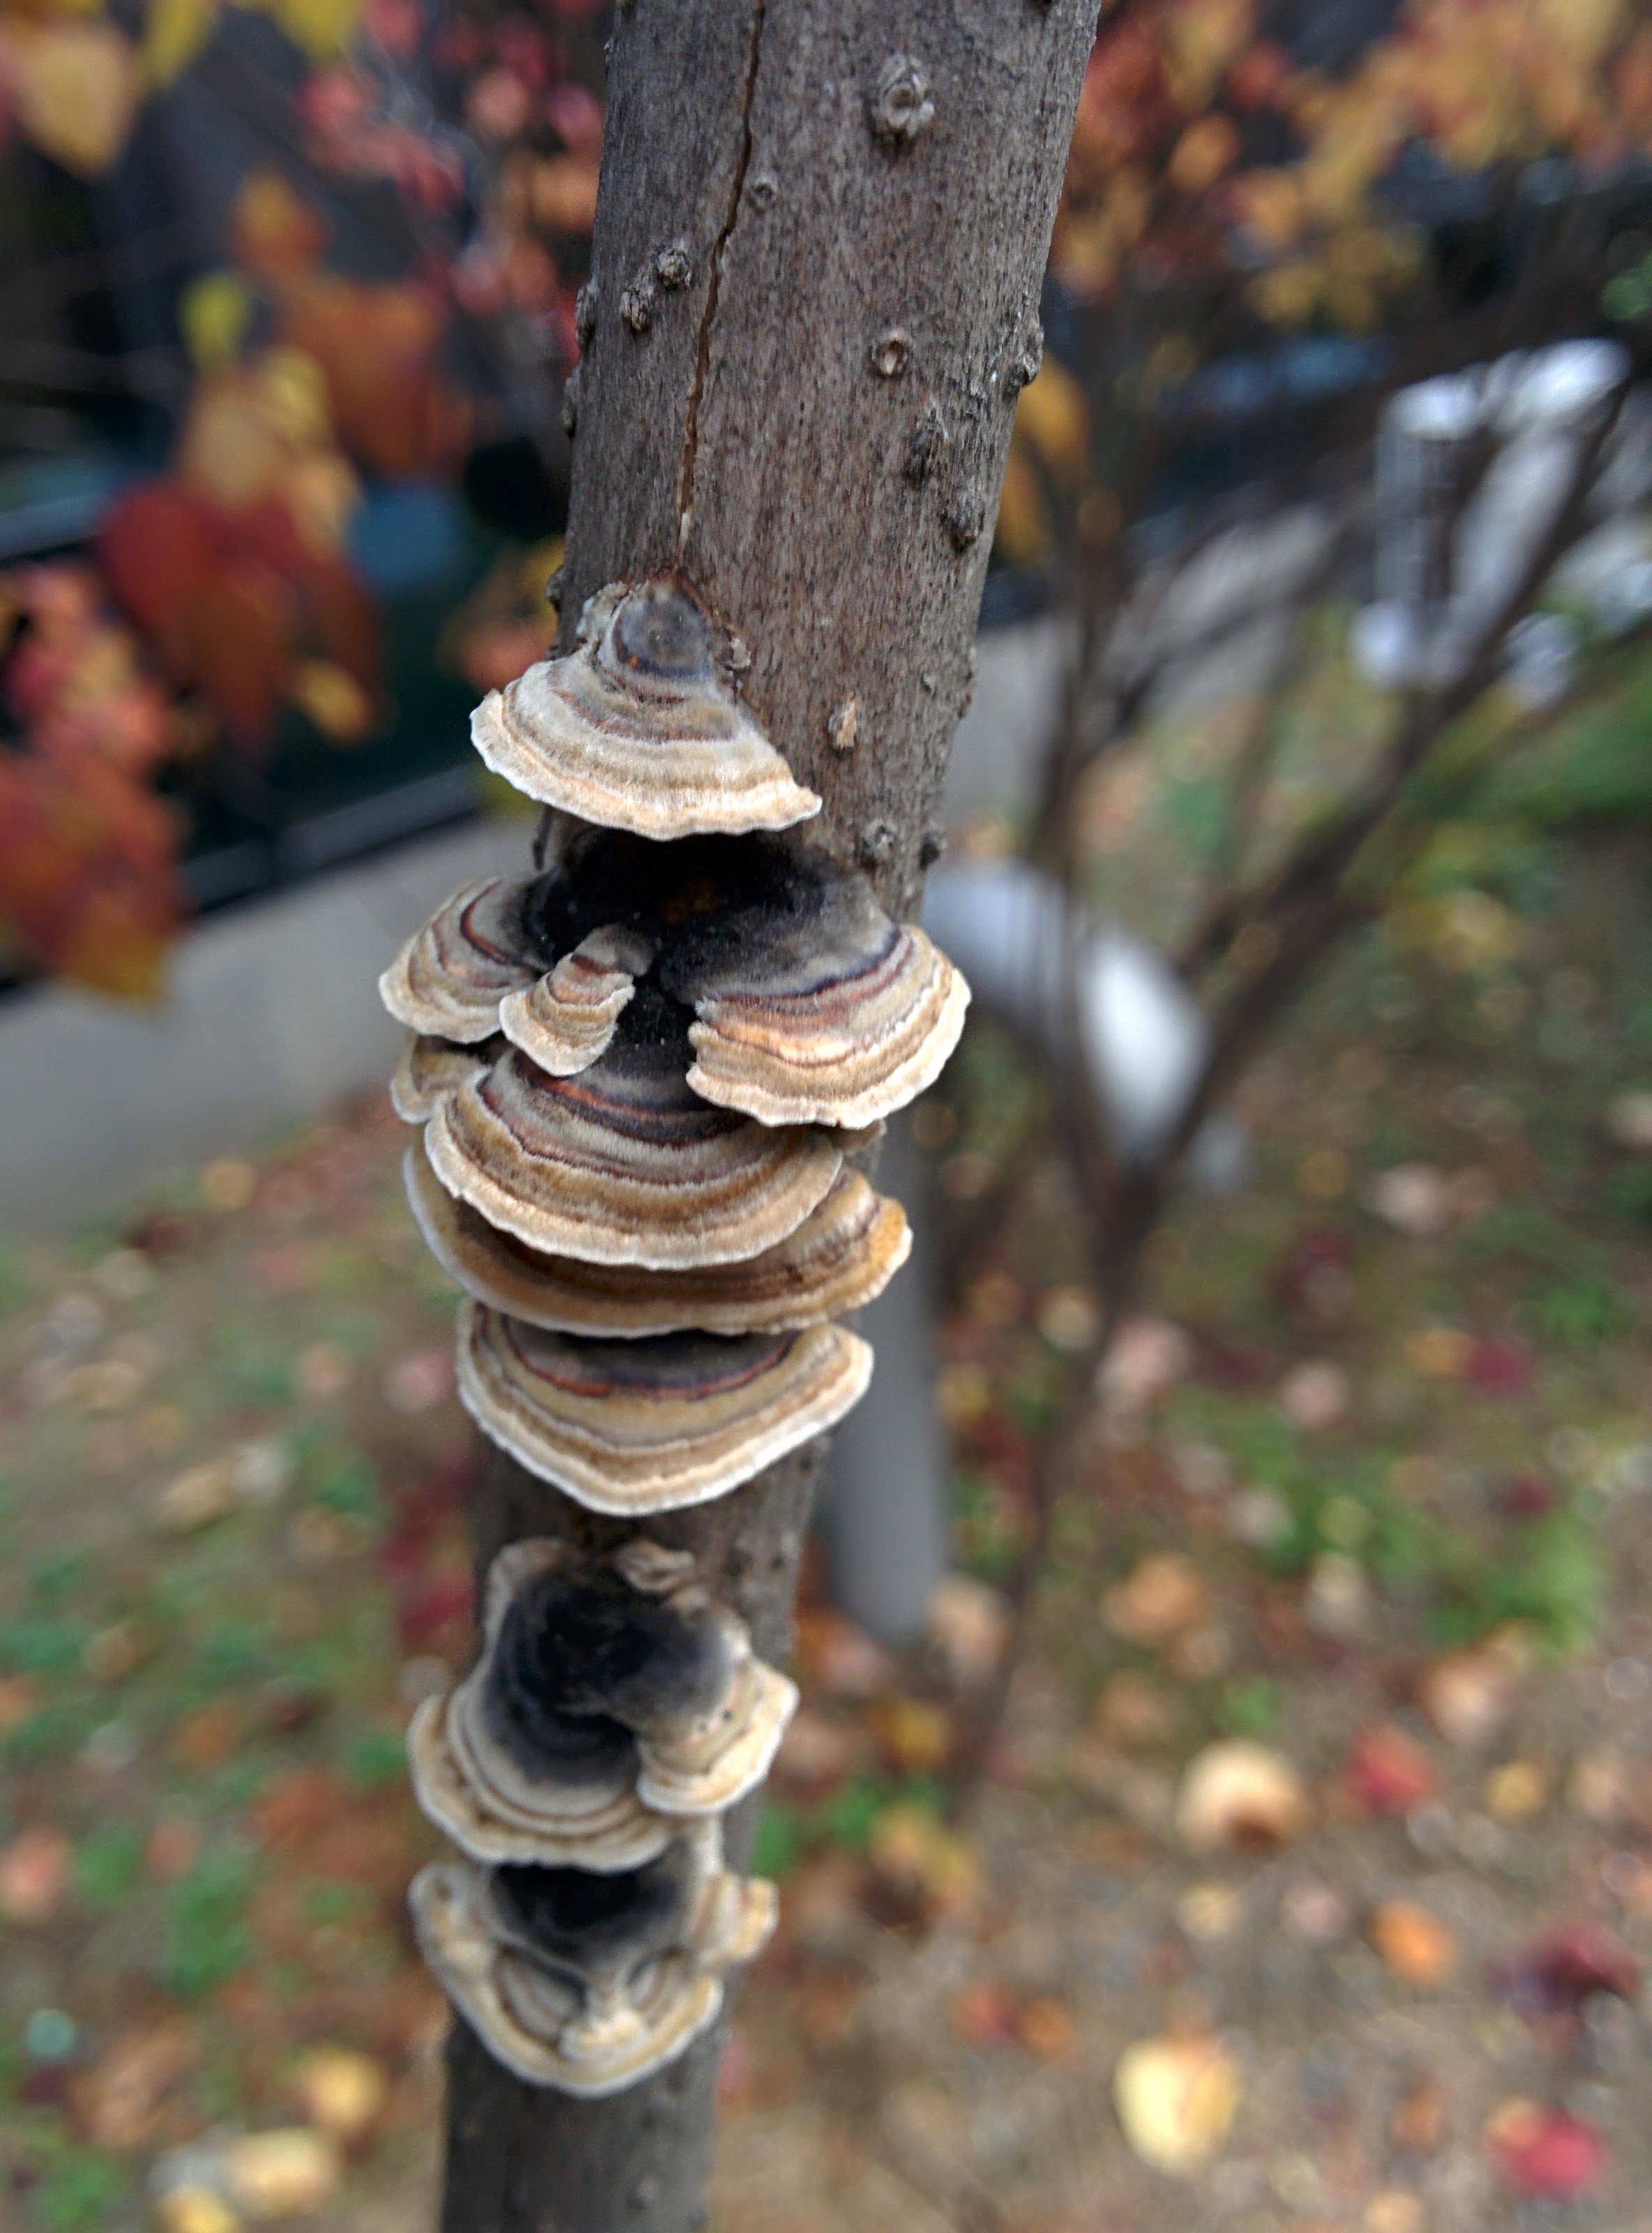 IMG_20151112_090415.jpg 라일락 나뭇가지에 붙어 자라는 버섯... 조개껍질버섯?